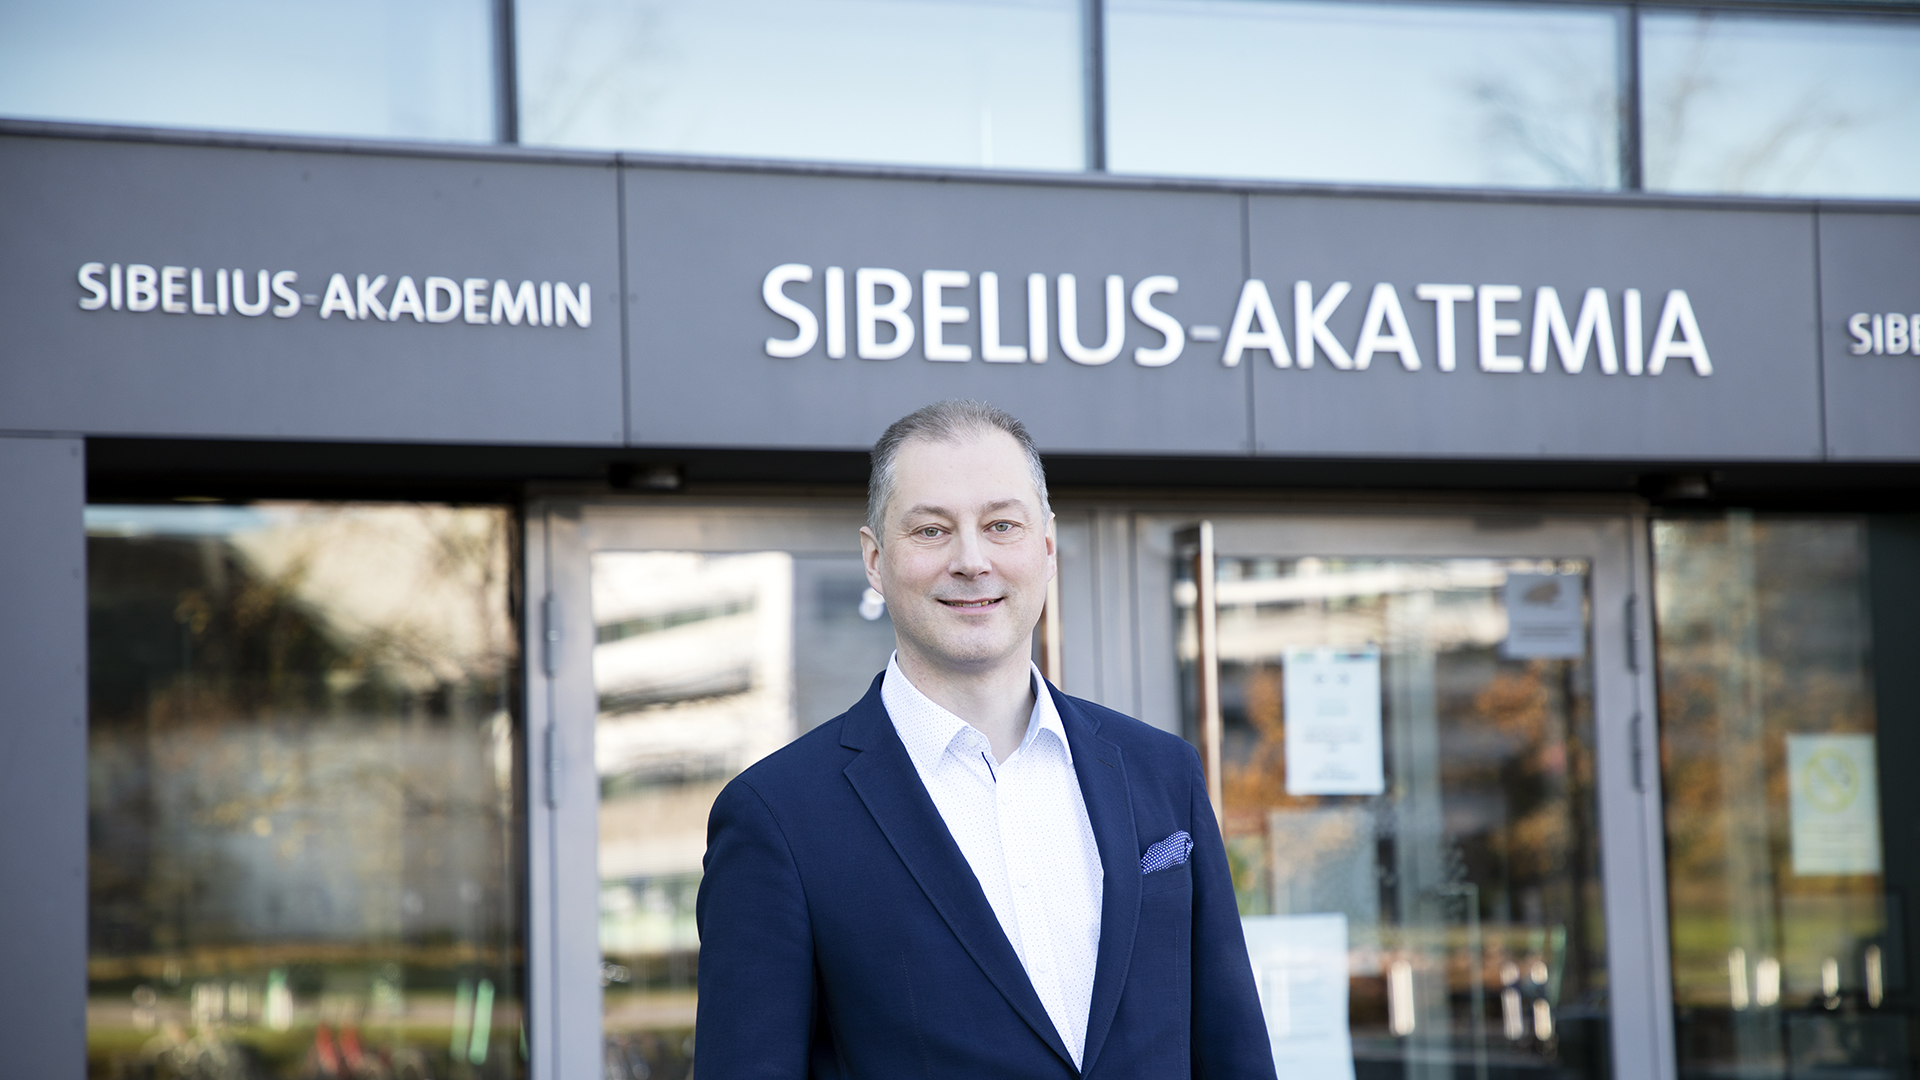 Olli-Pekka Martikainen in front of a Sibelius Academy building.